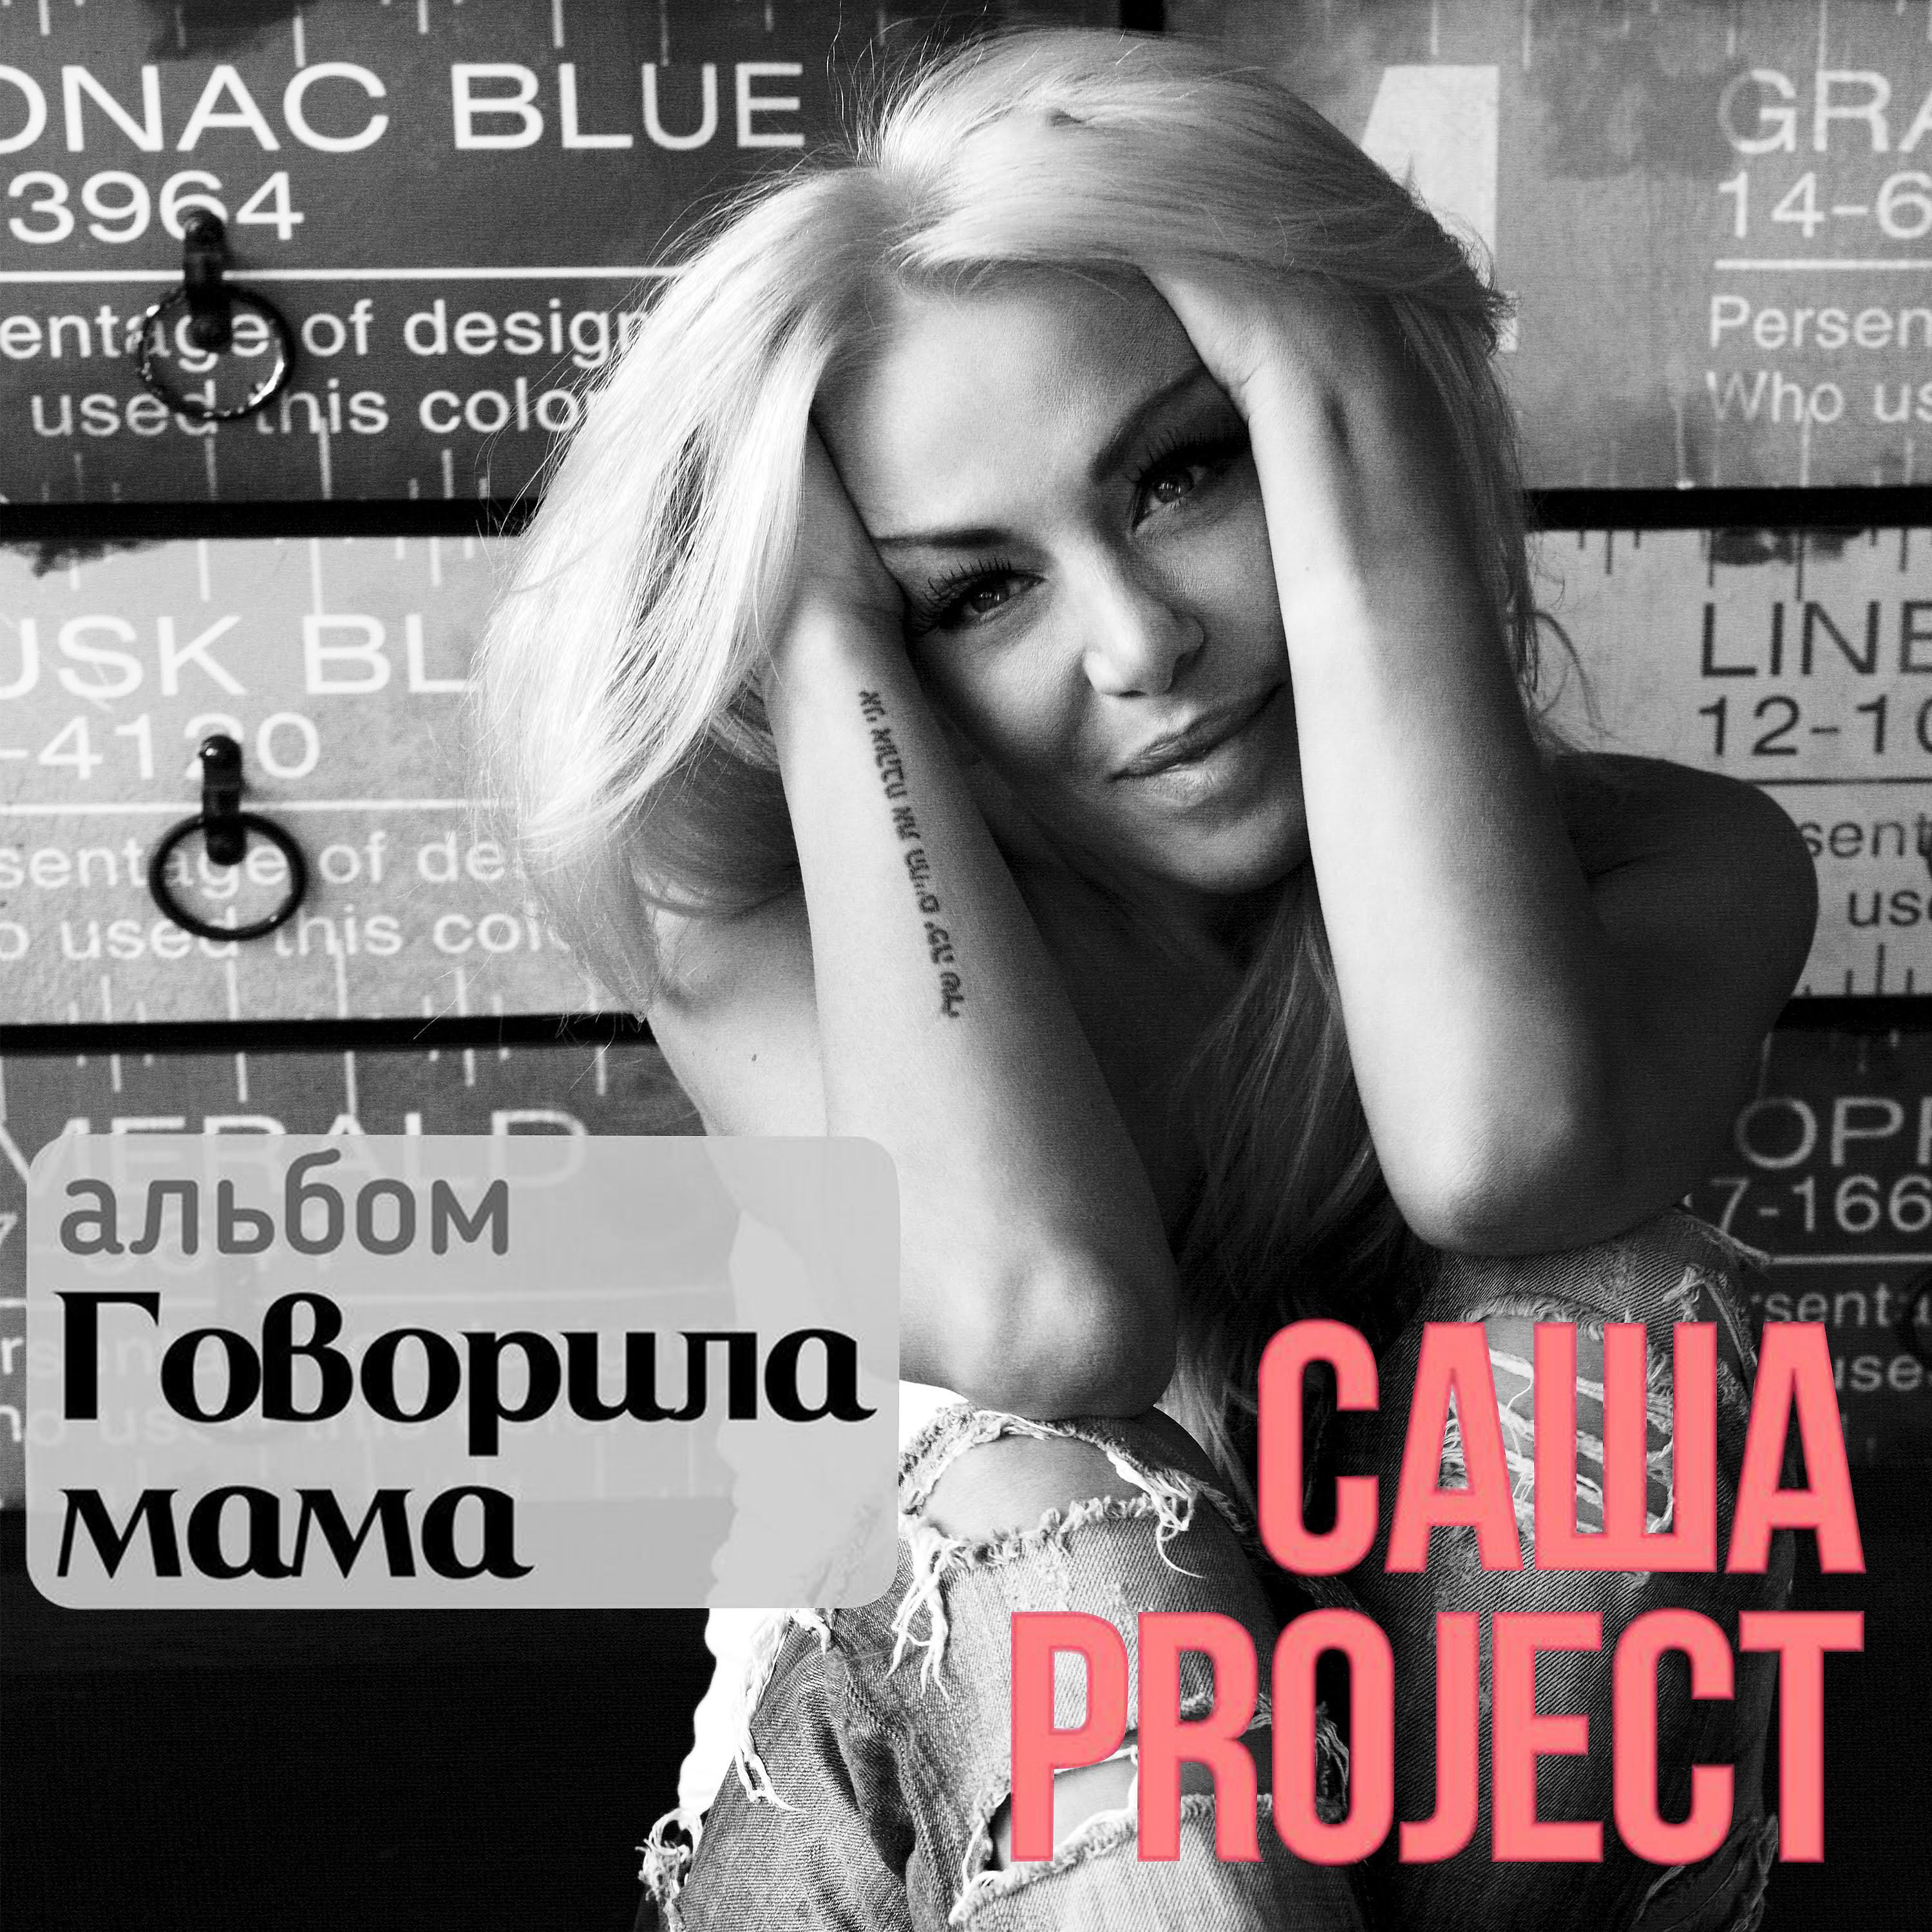 Саша Project все песни в mp3